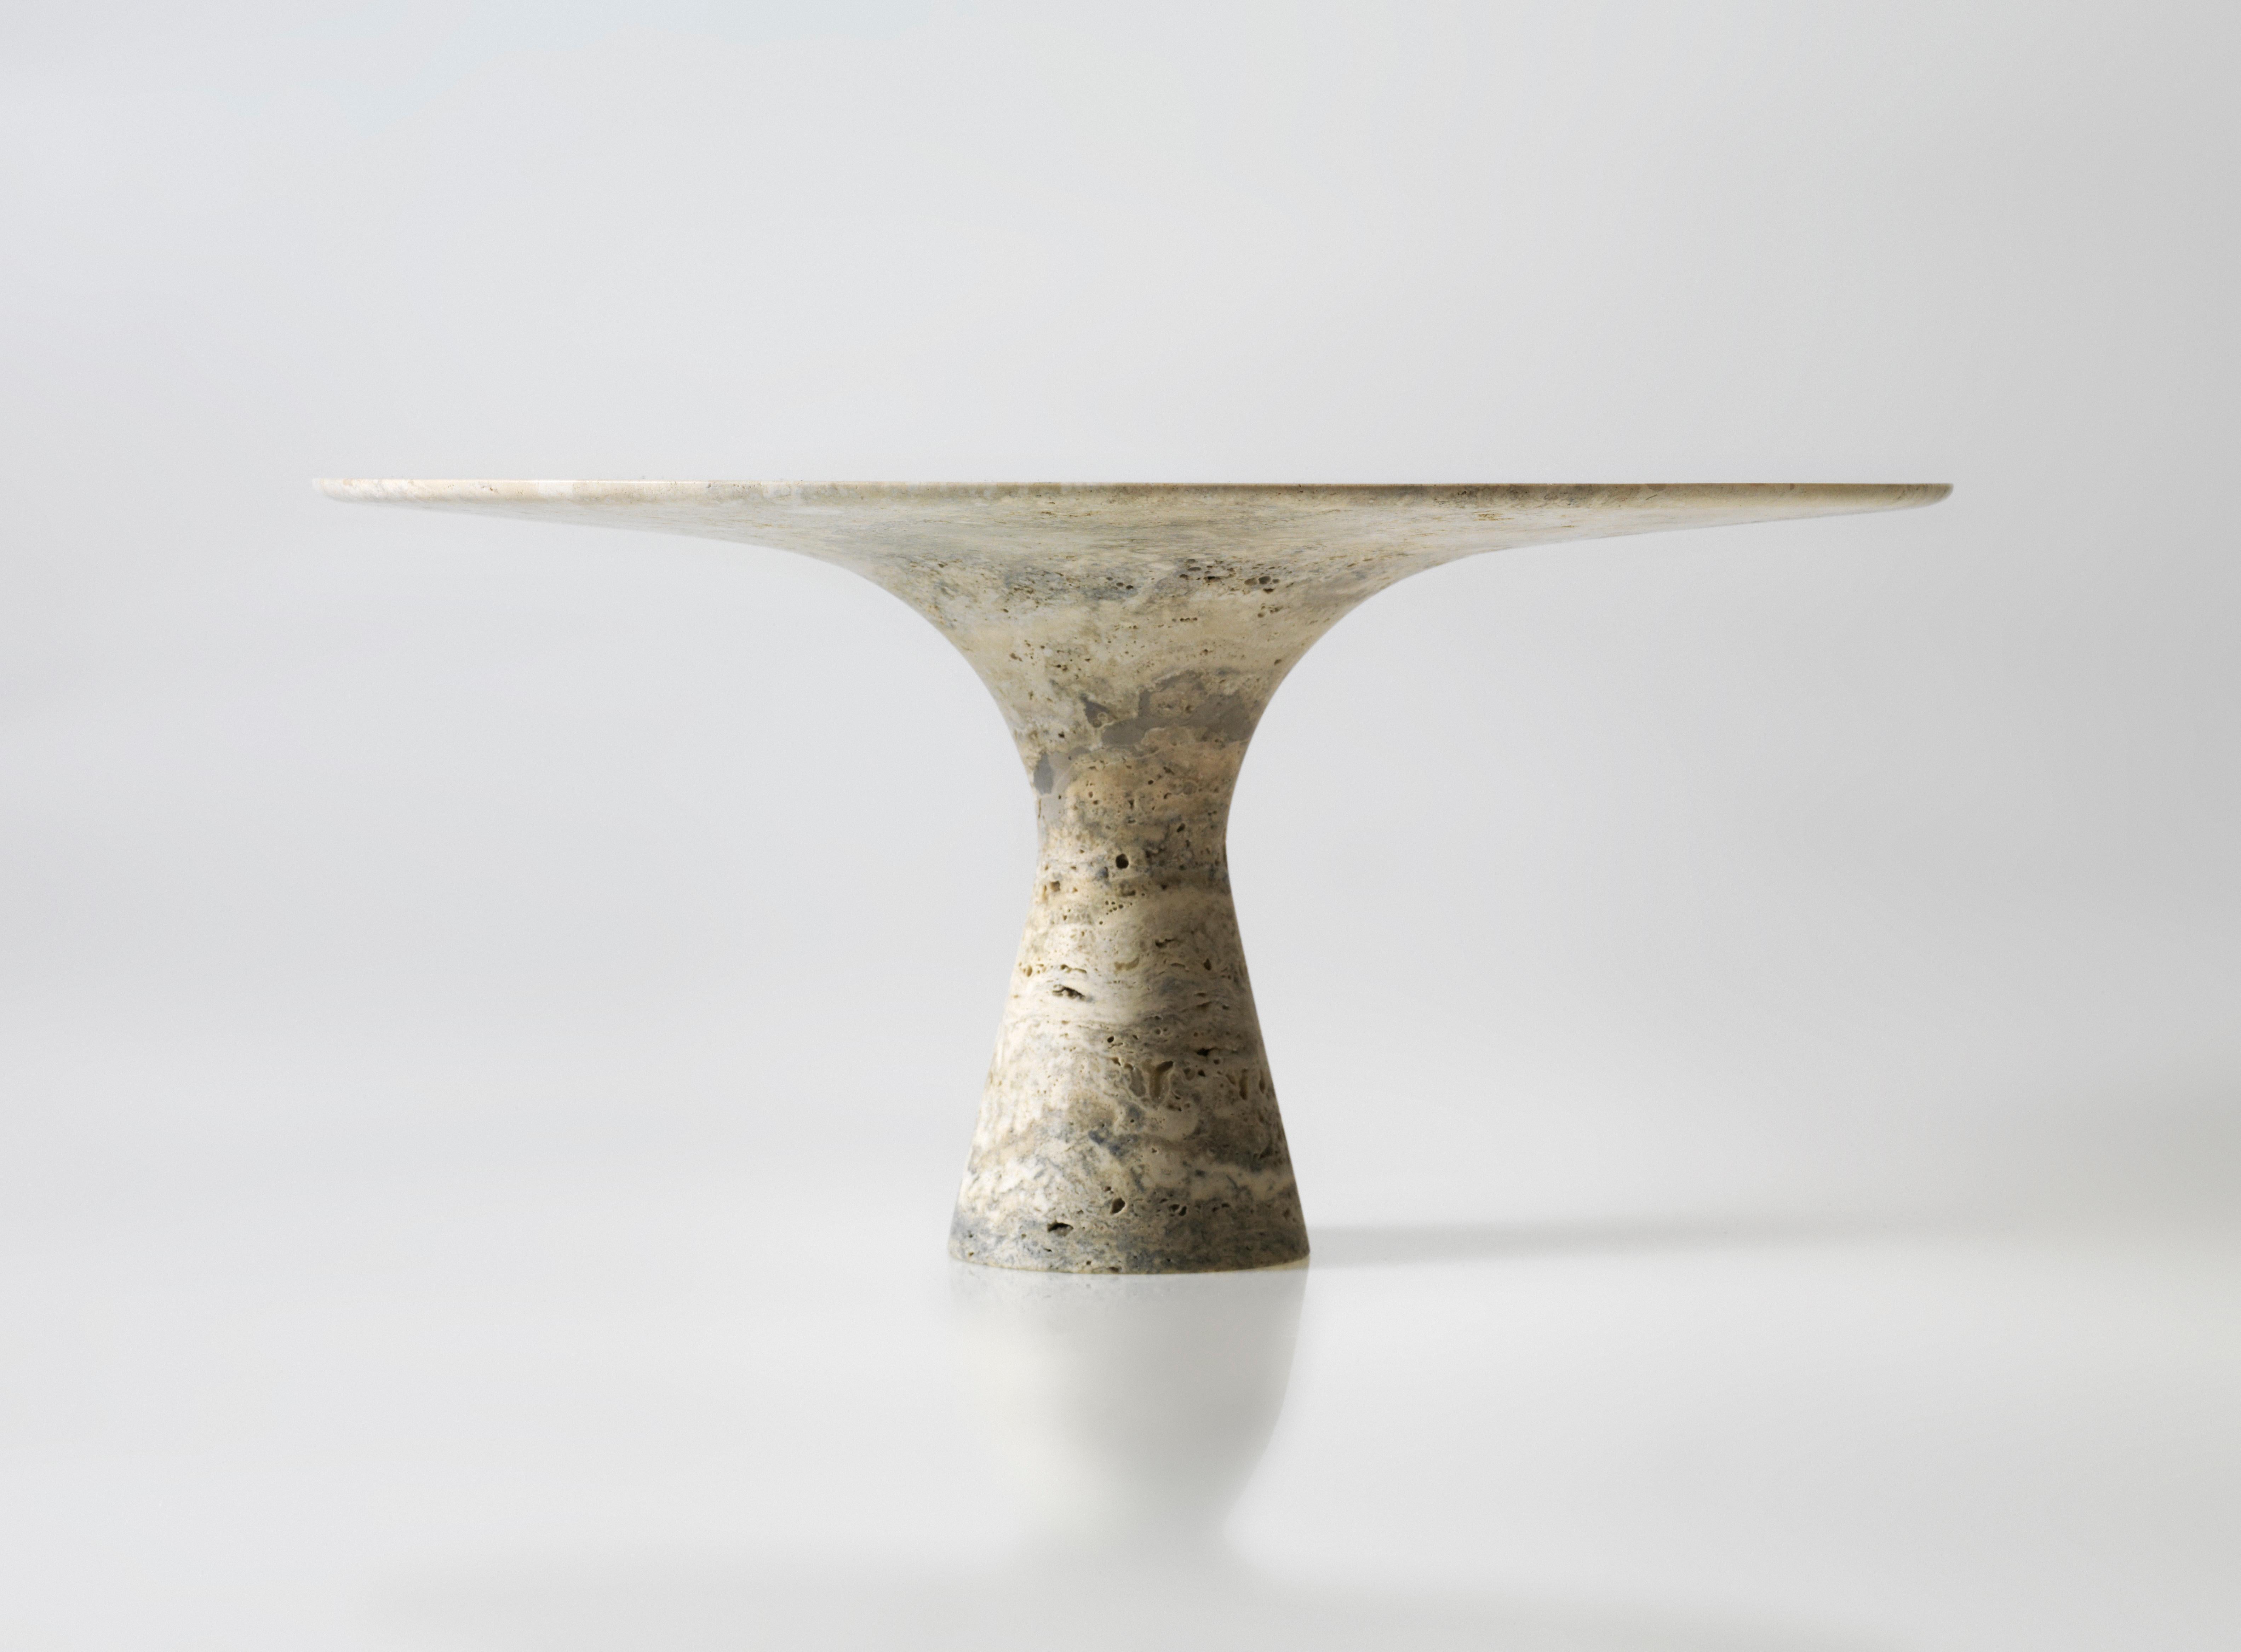 Travertino Silber verfeinert Zeitgenössischer Marmor Oval Tisch 210/75
Abmessungen: 210 x 135 x 75 cm
MATERIALIEN: Travertino Silber.

Angelo ist die Essenz eines runden Tisches aus Naturstein, eine skulpturale Form aus robustem Material mit